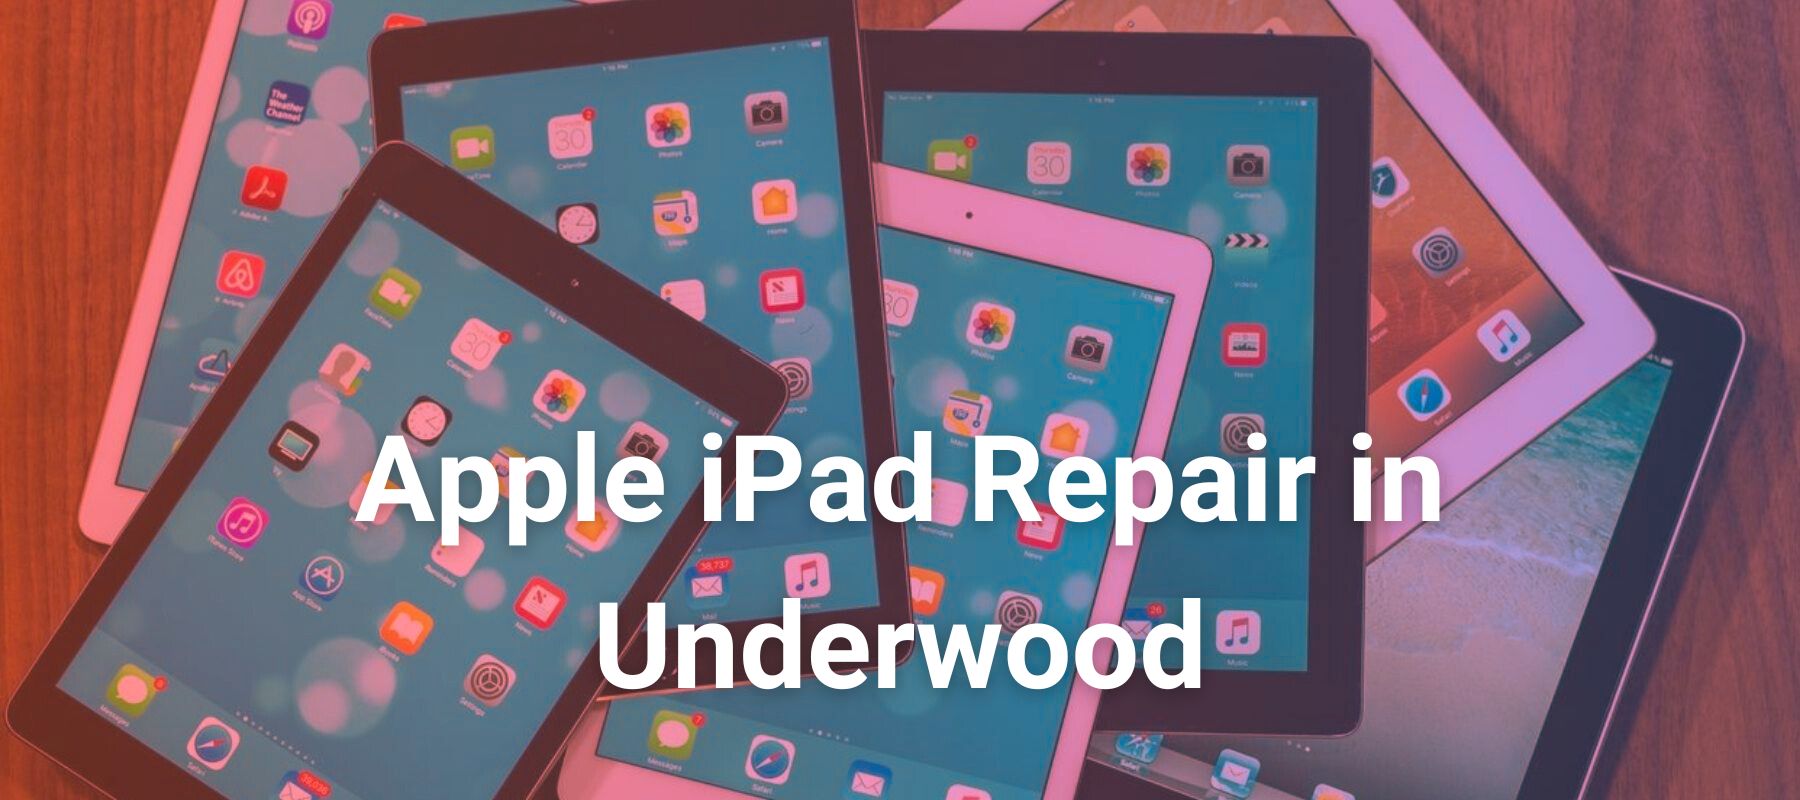 Apple iPad Repair in Underwood